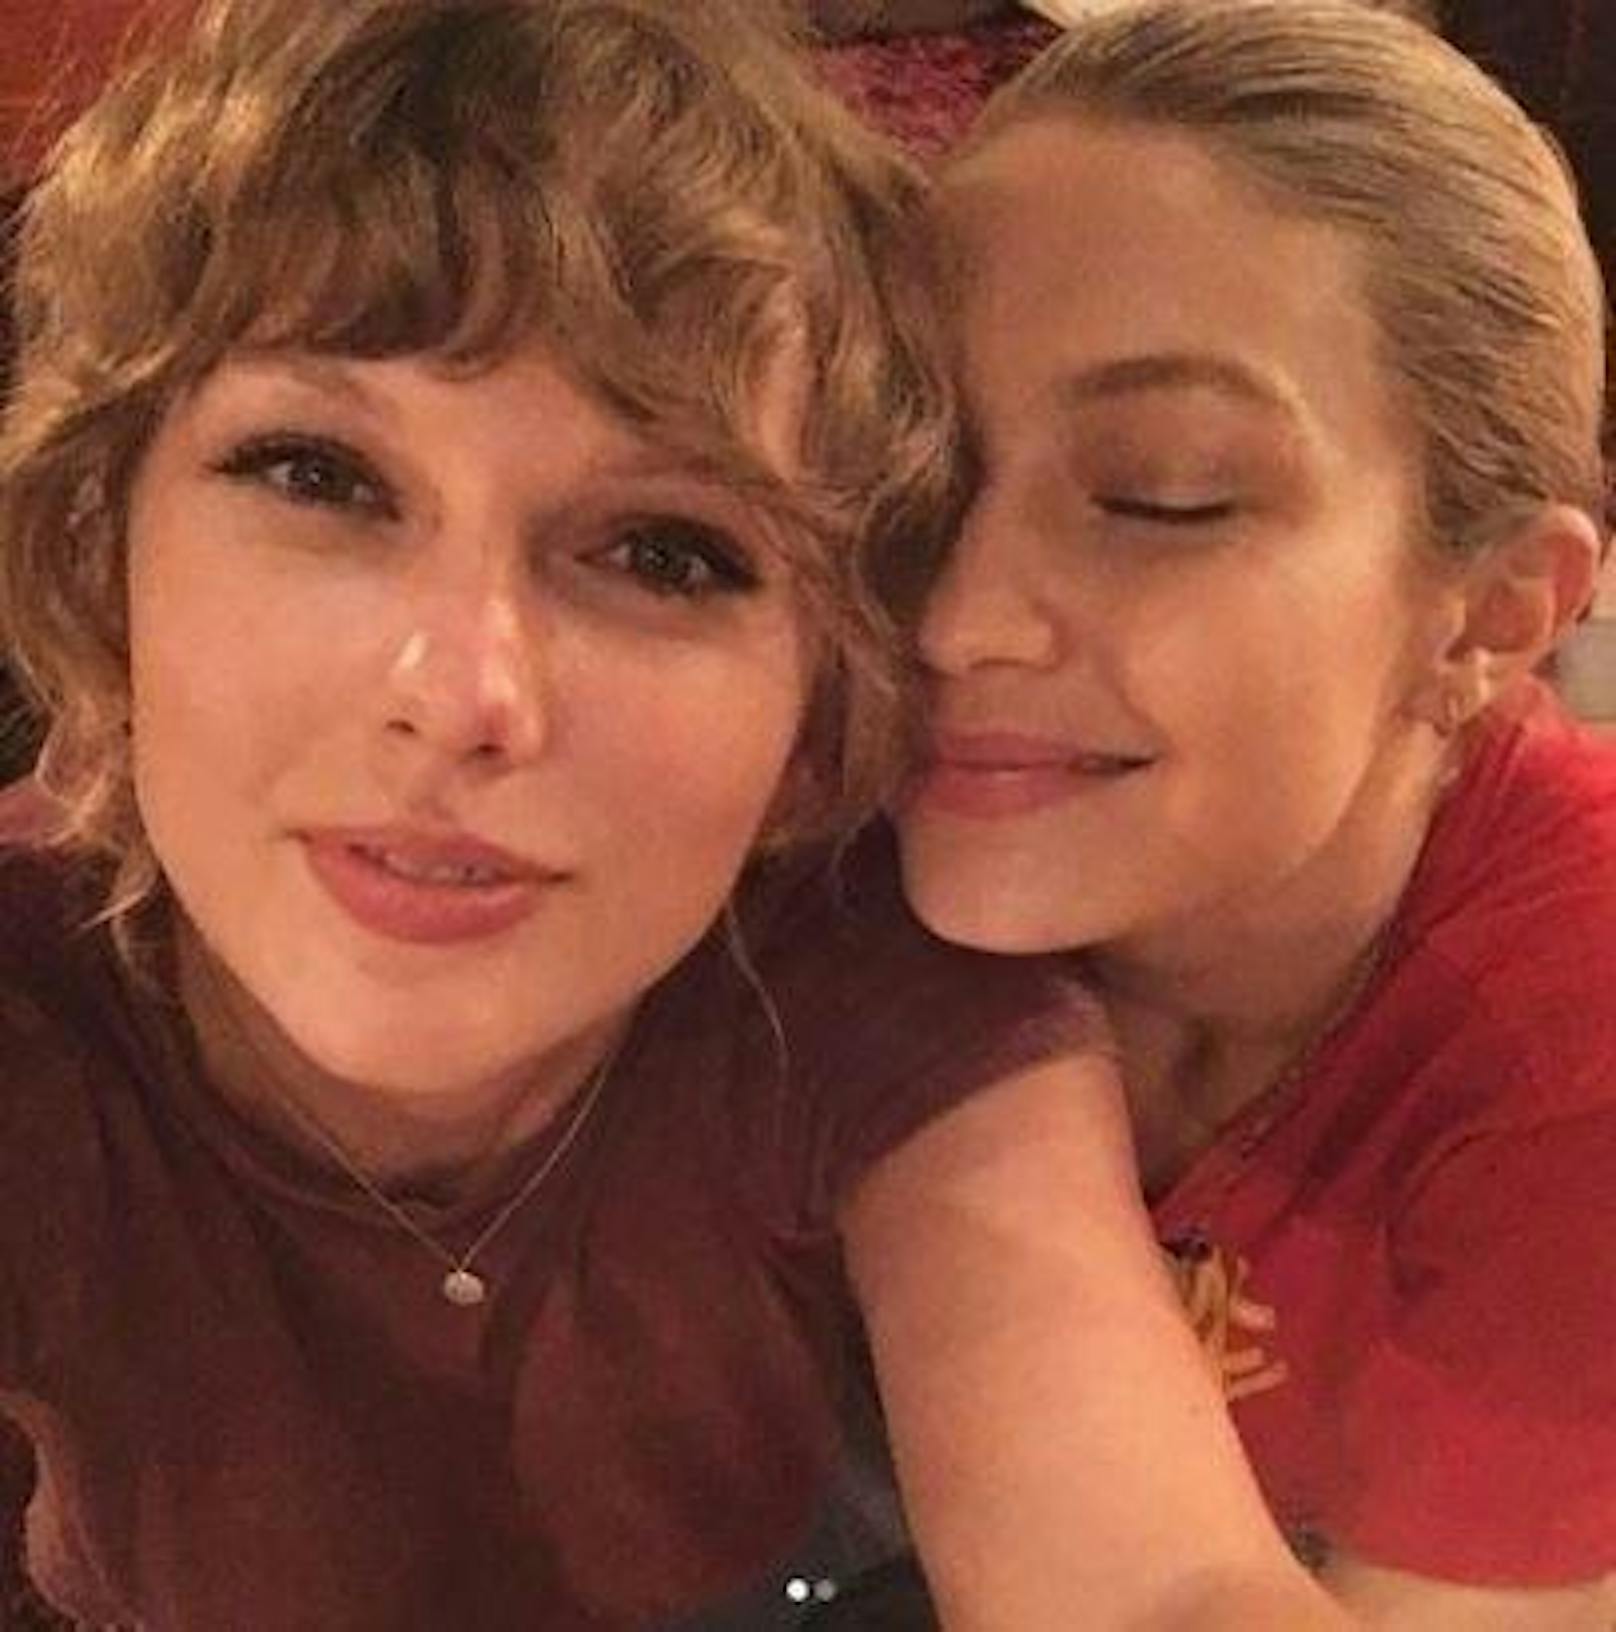 17.12.2017: Gigi Hadid gratulierte mit diesem herzigen Foto ihrer Busenfreundin Taylor Swift nachträglich zum Geburtstag.